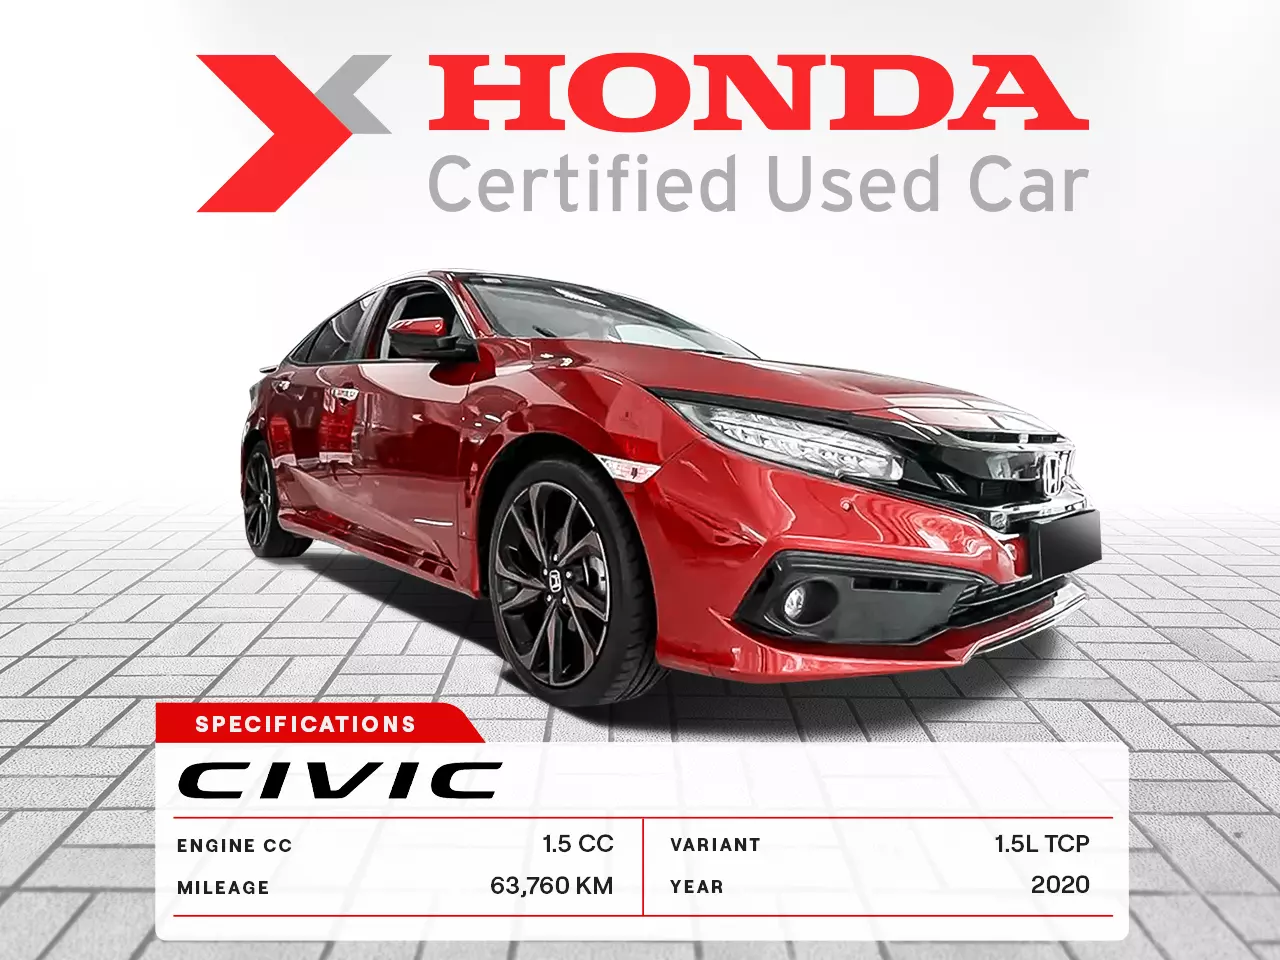 2020 Honda Civic 1.5L TCP